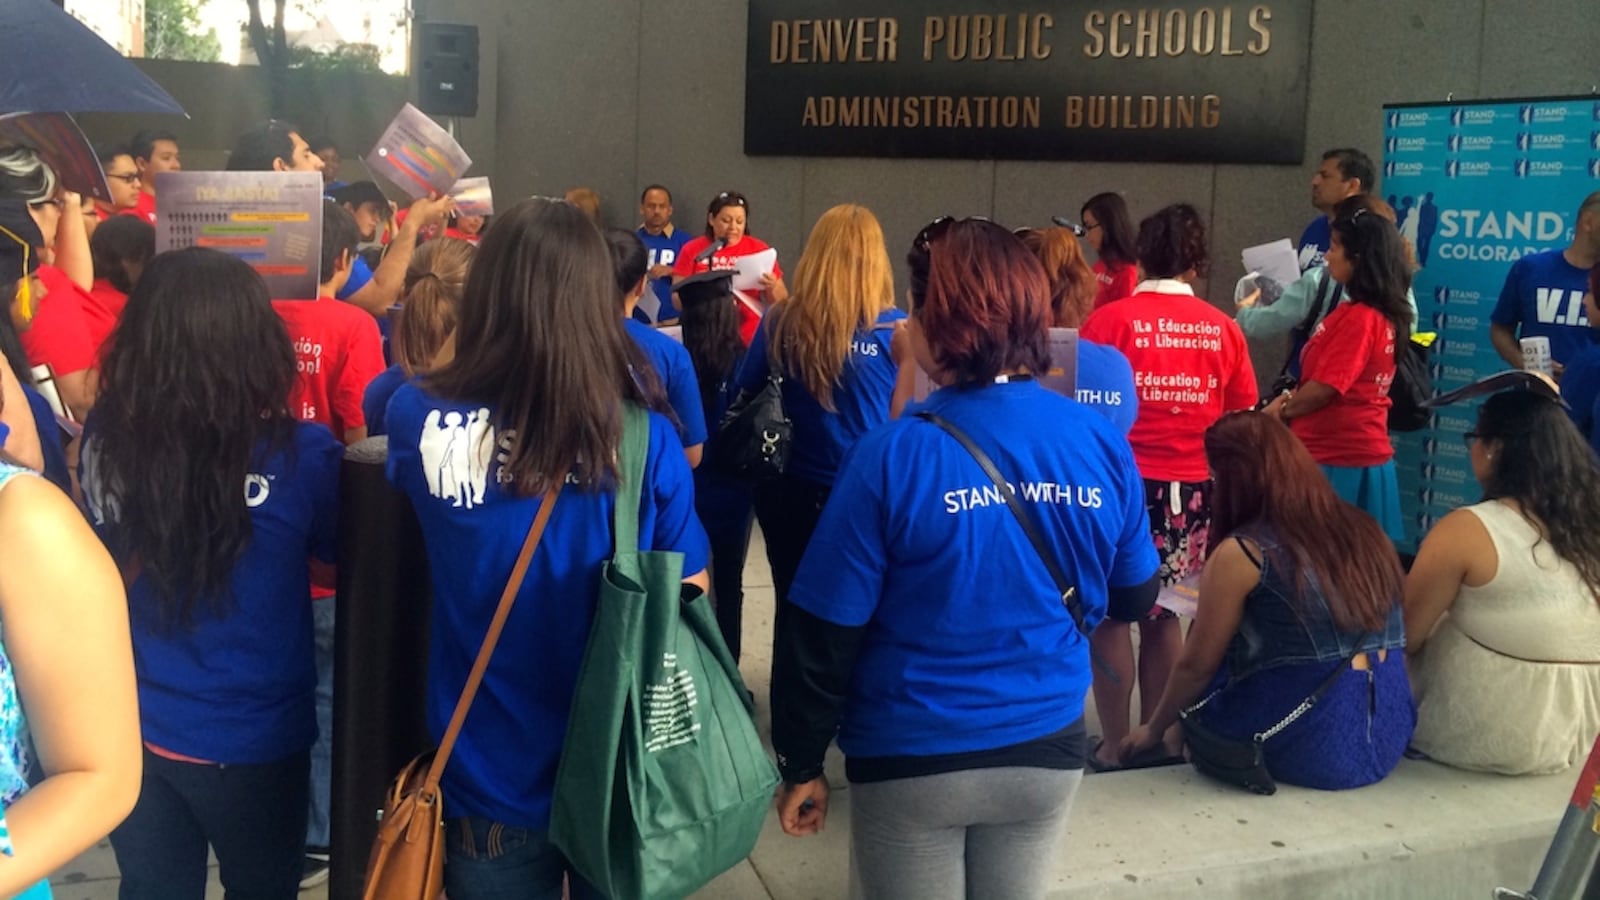 Southwest Denver parents and students rallied outside Denver Public Schools' headquarters Thursday night demanding better schools.